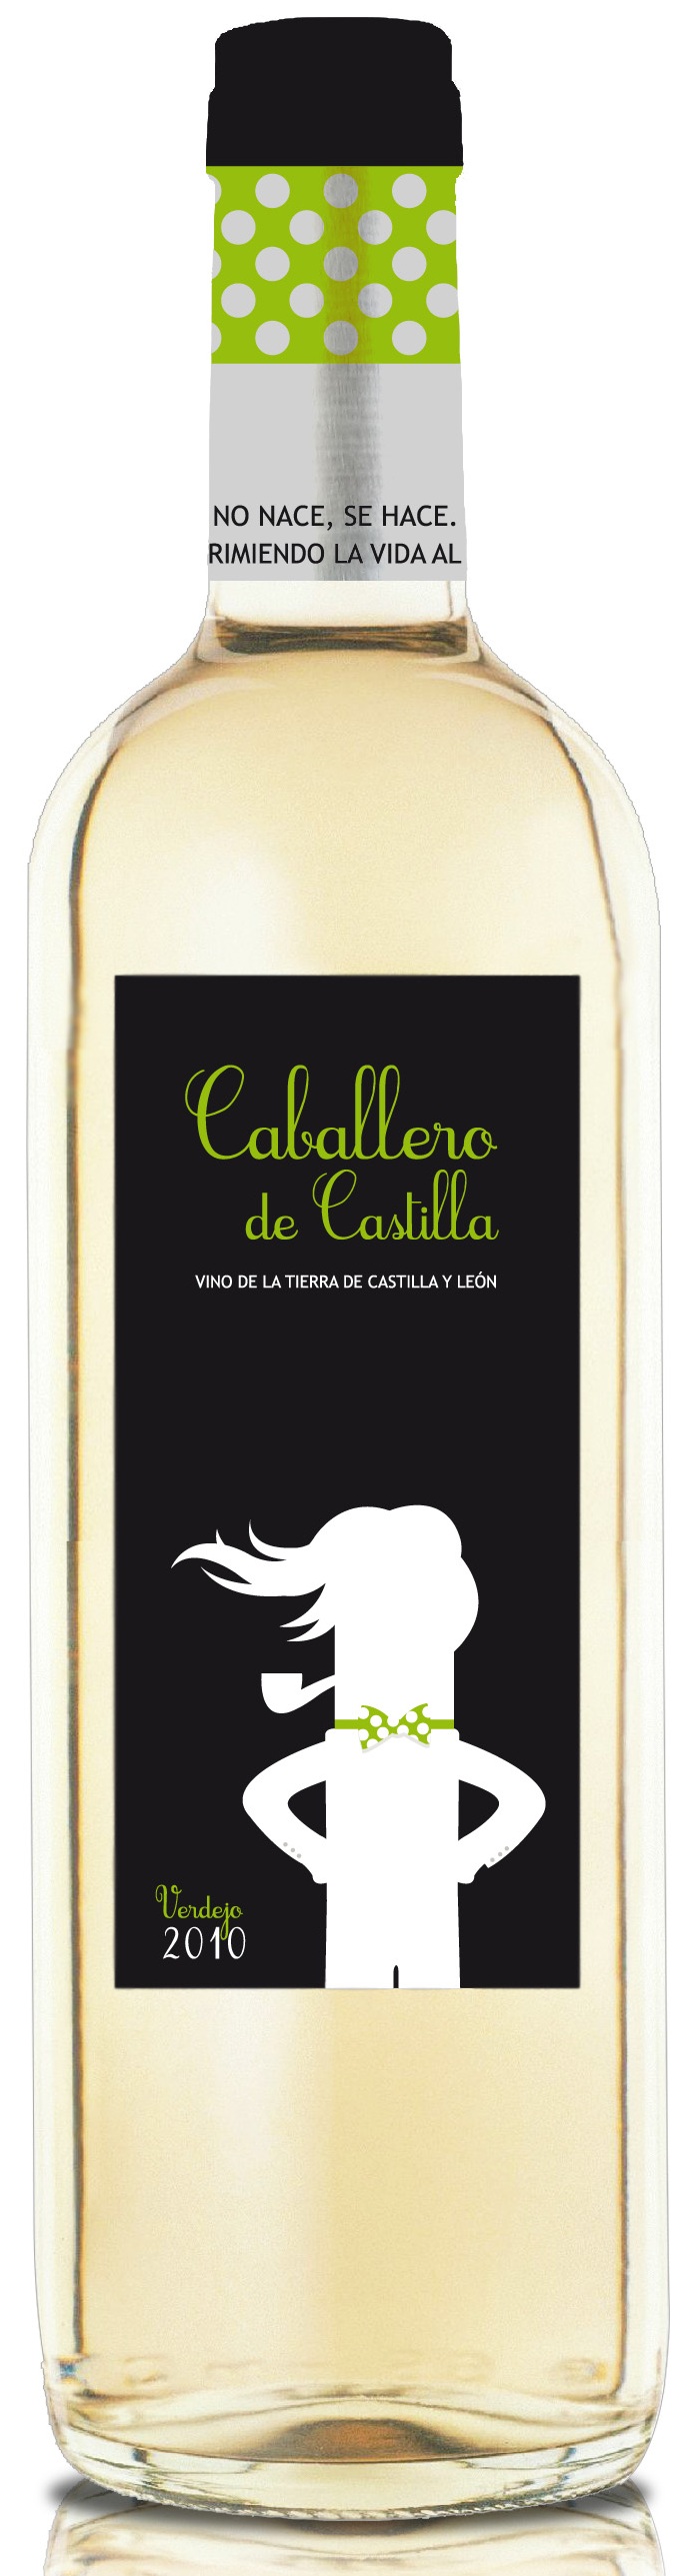 Imagen de la botella de Vino Caballero de Castilla Verdejo